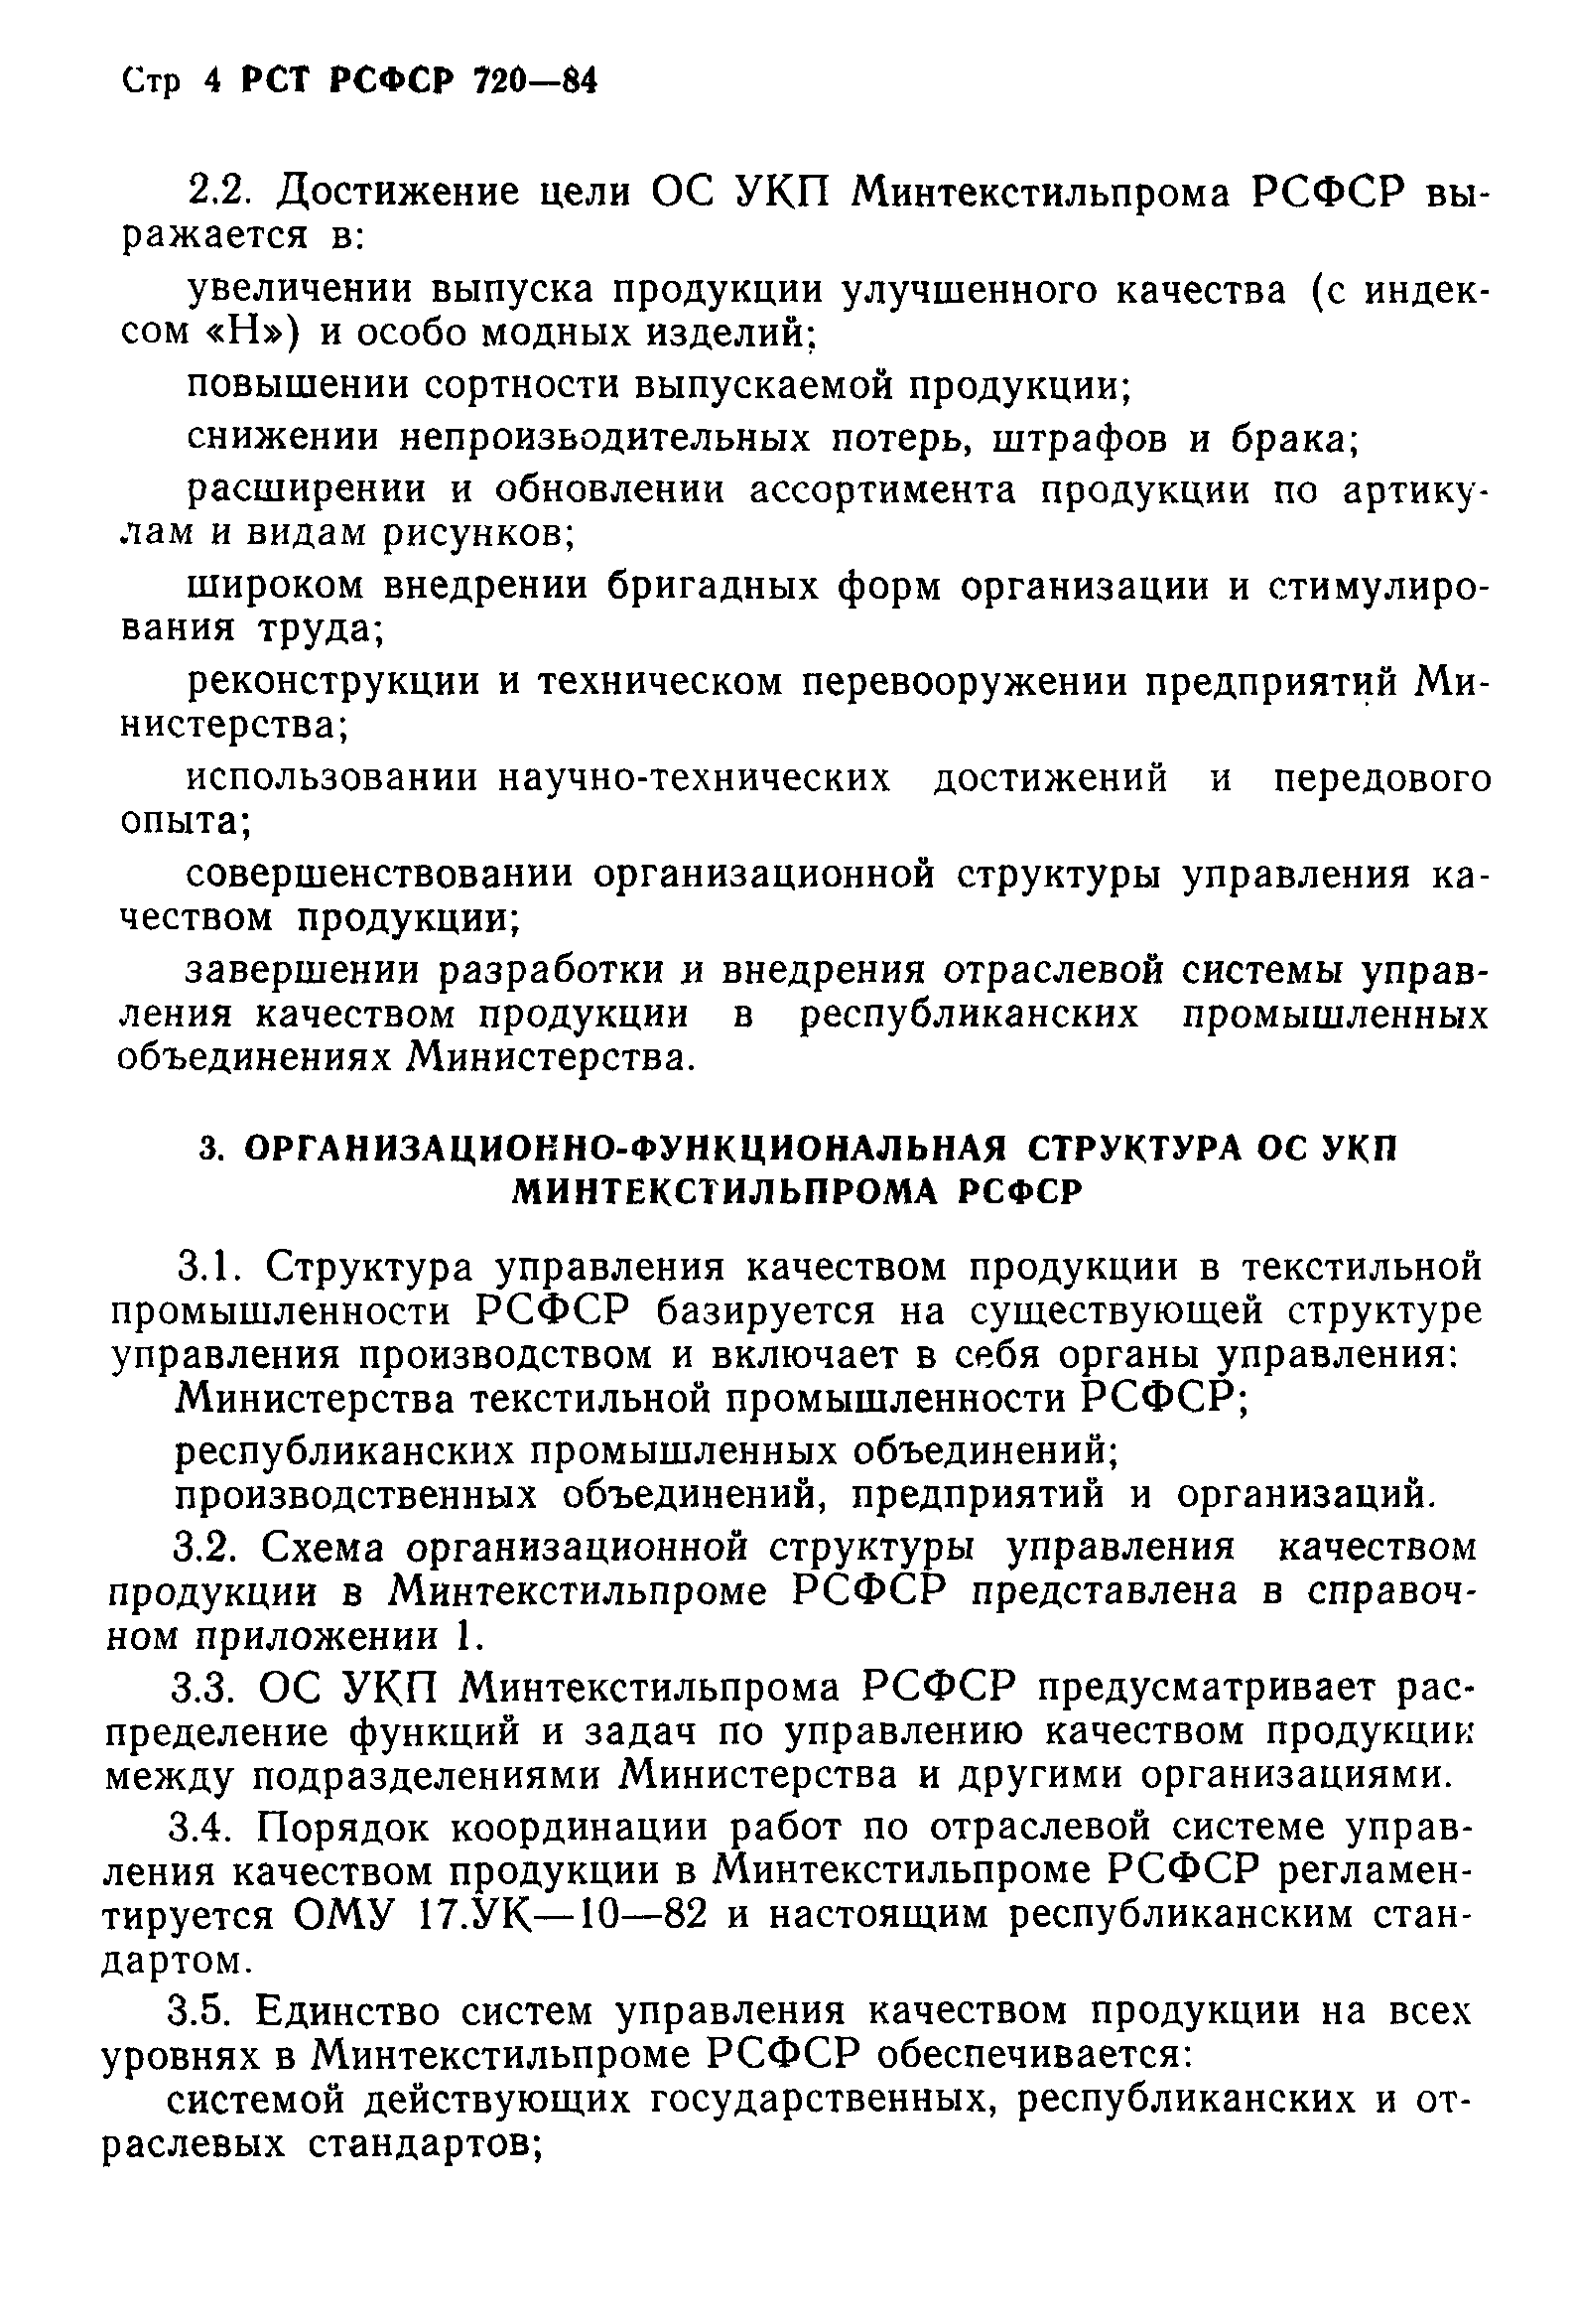 РСТ РСФСР 720-84